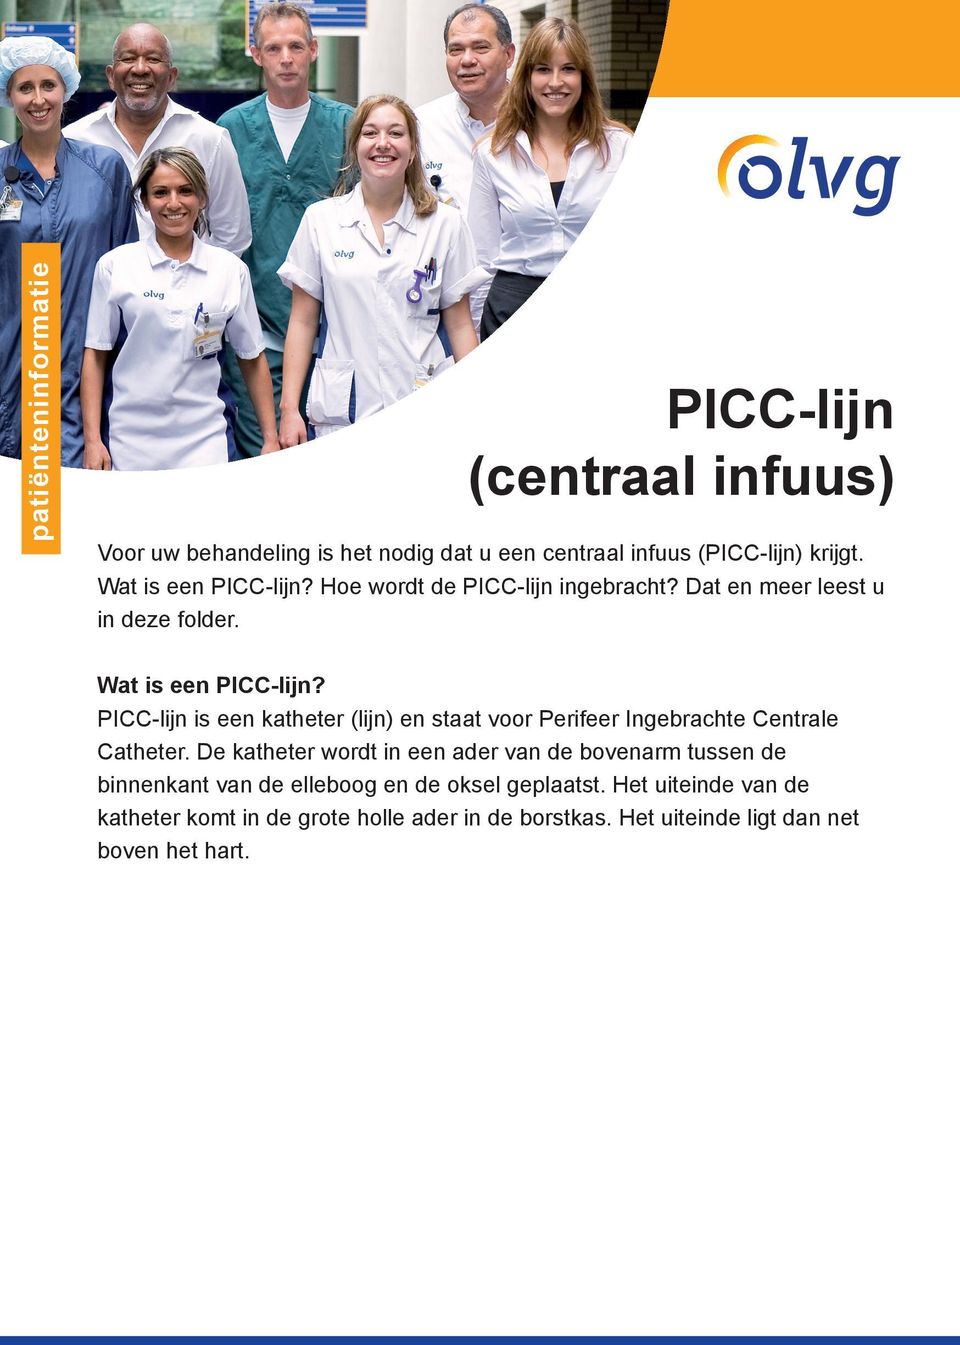 PICC-lijn is een katheter (lijn) en staat voor Perifeer Ingebrachte Centrale Catheter.